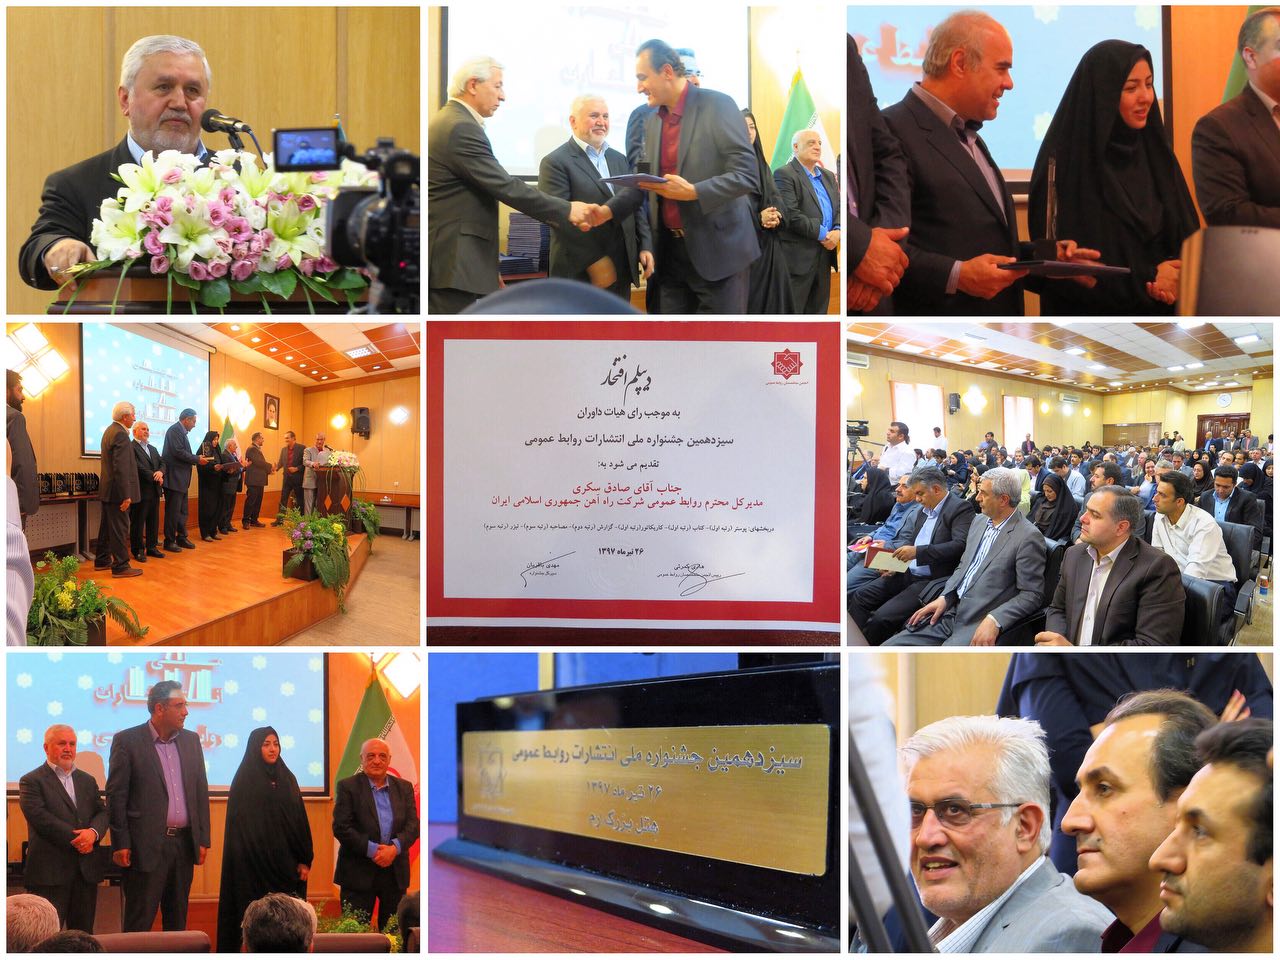 دیپلم افتخار سیزدهمین جشنواره ملی انتشارات روابط عمومی کشور به مدیرکل روابط عمومی راه آهن اعطا شد.